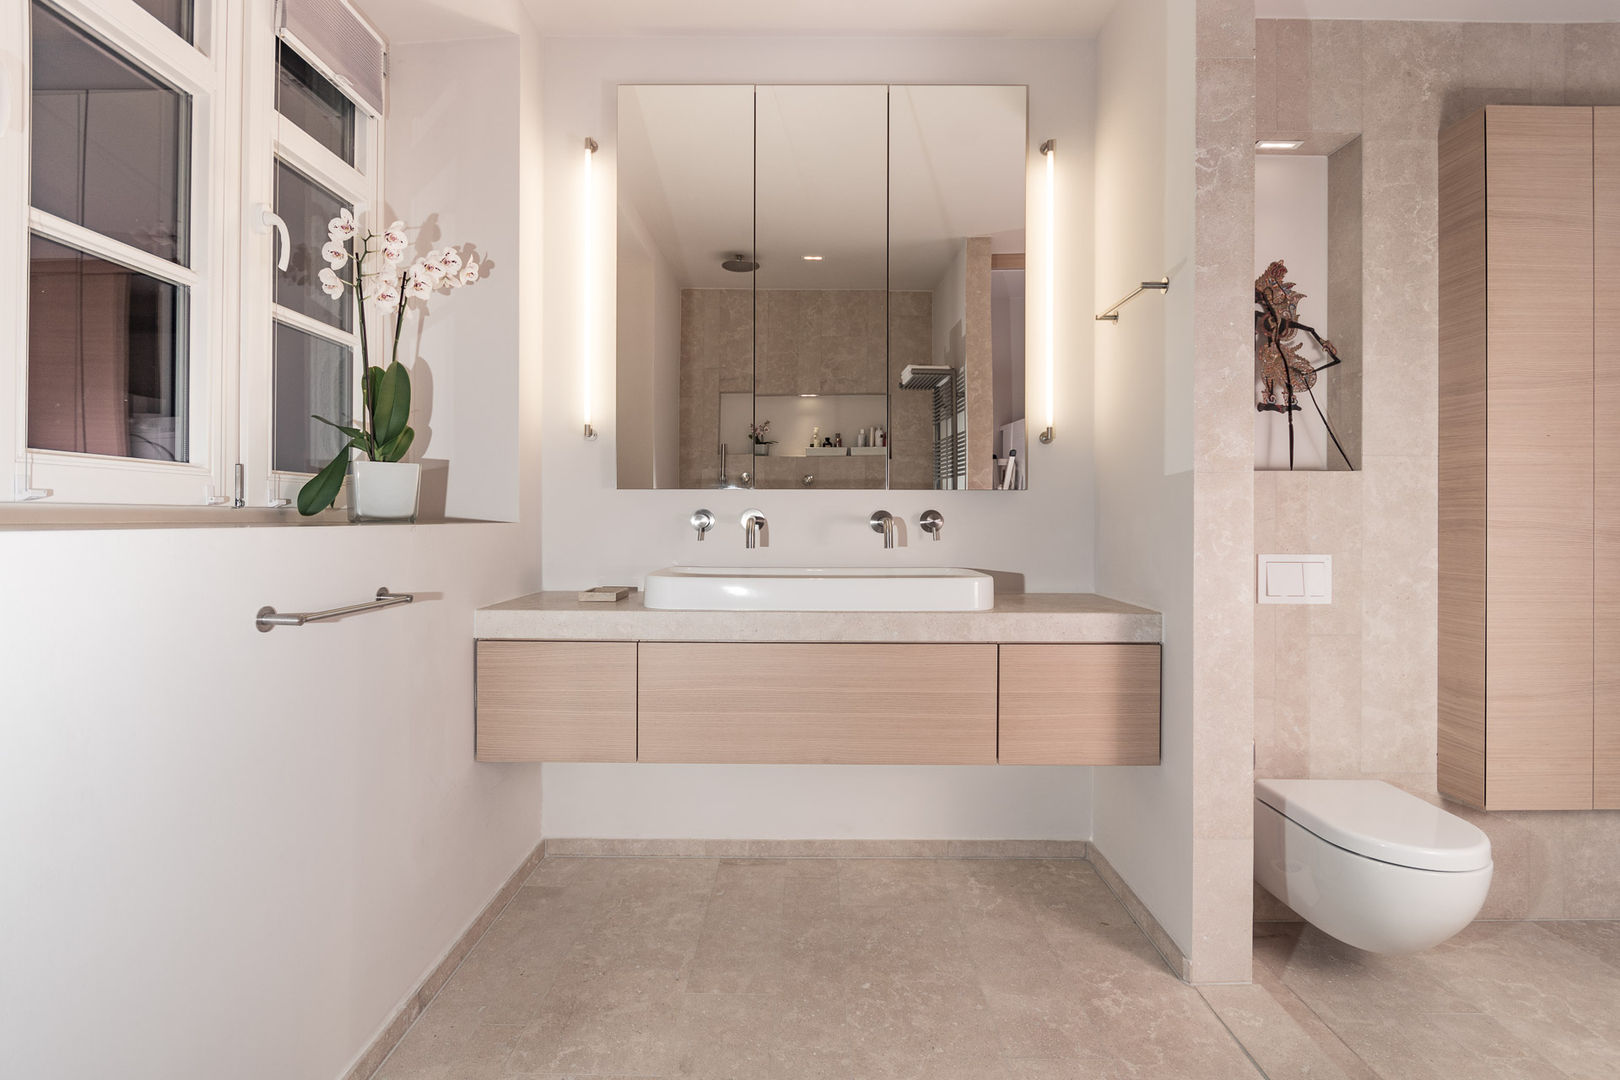 現代 by Vivante, 現代風 bathroom,basin,interior,design,basin